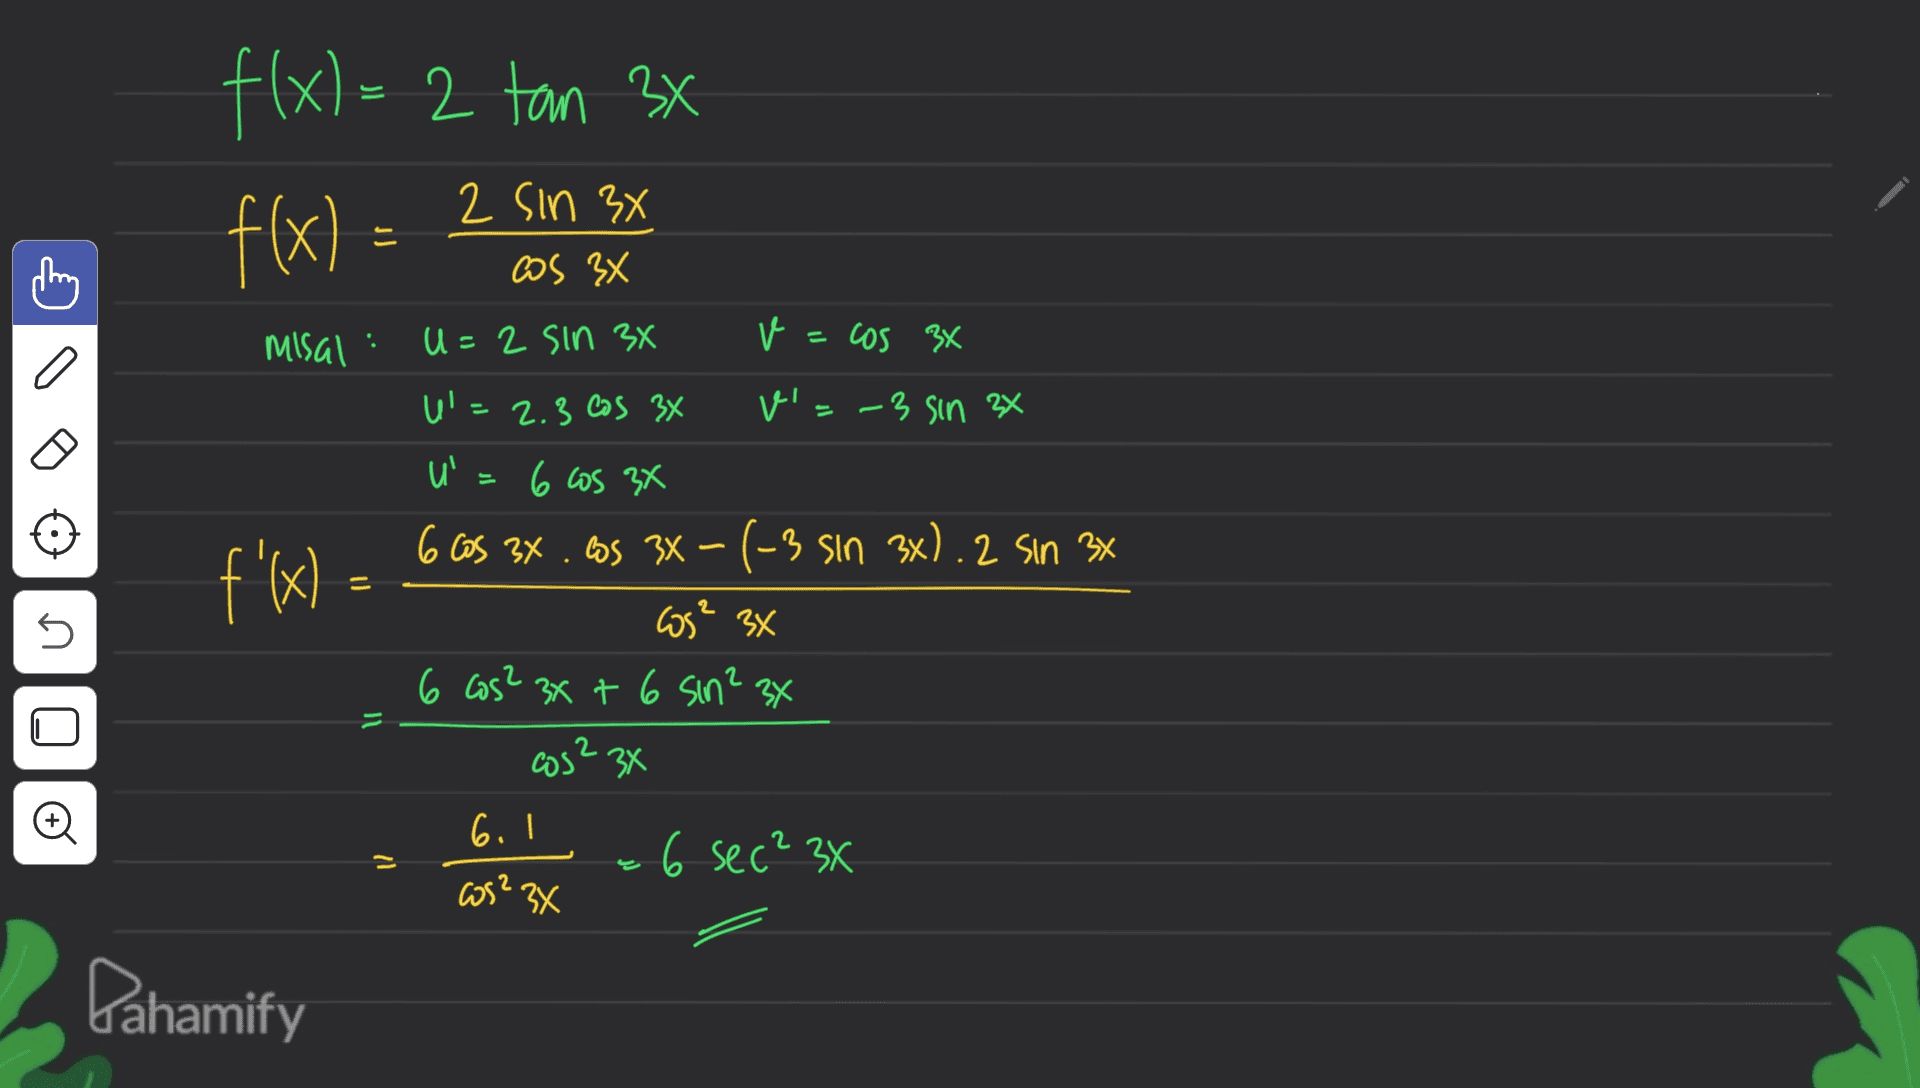 fx) f(x)=2 tan 3x 2 х f(x) = 2 Sin 3x 2 3x Cos 3x . Misal U=2 sin 3x v=cos 3x a f'x U'=2.3 cos 34 v'=-3 sin 2x u= 6 cos 3x 6 Cos 3x . los 34 -(-3 sin 3x). 2 sin 3x cos? 3x 6 cos? 3x + 6 sin? 3x = s s Il = Oo cos? 34 6. I 26 sec? 3x cos? 3x Pahamify 